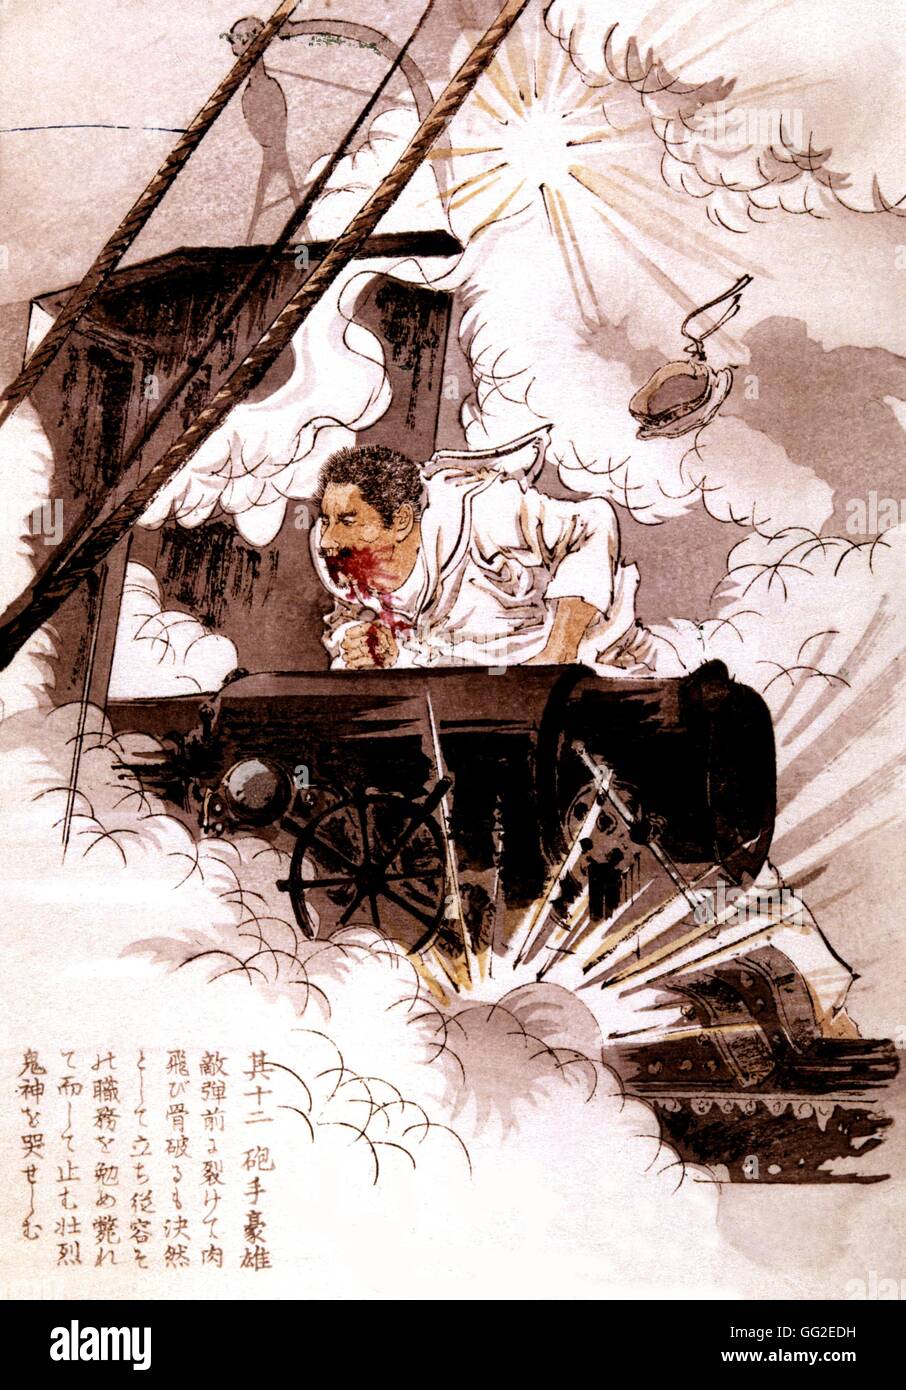 K.Suzuki. Schlacht des gelben Meeres, heroischen Seemann Hiroshige aus dem Boot Hashidate 1905 China - Japanisch-Chinesischen Krieg Stockfoto